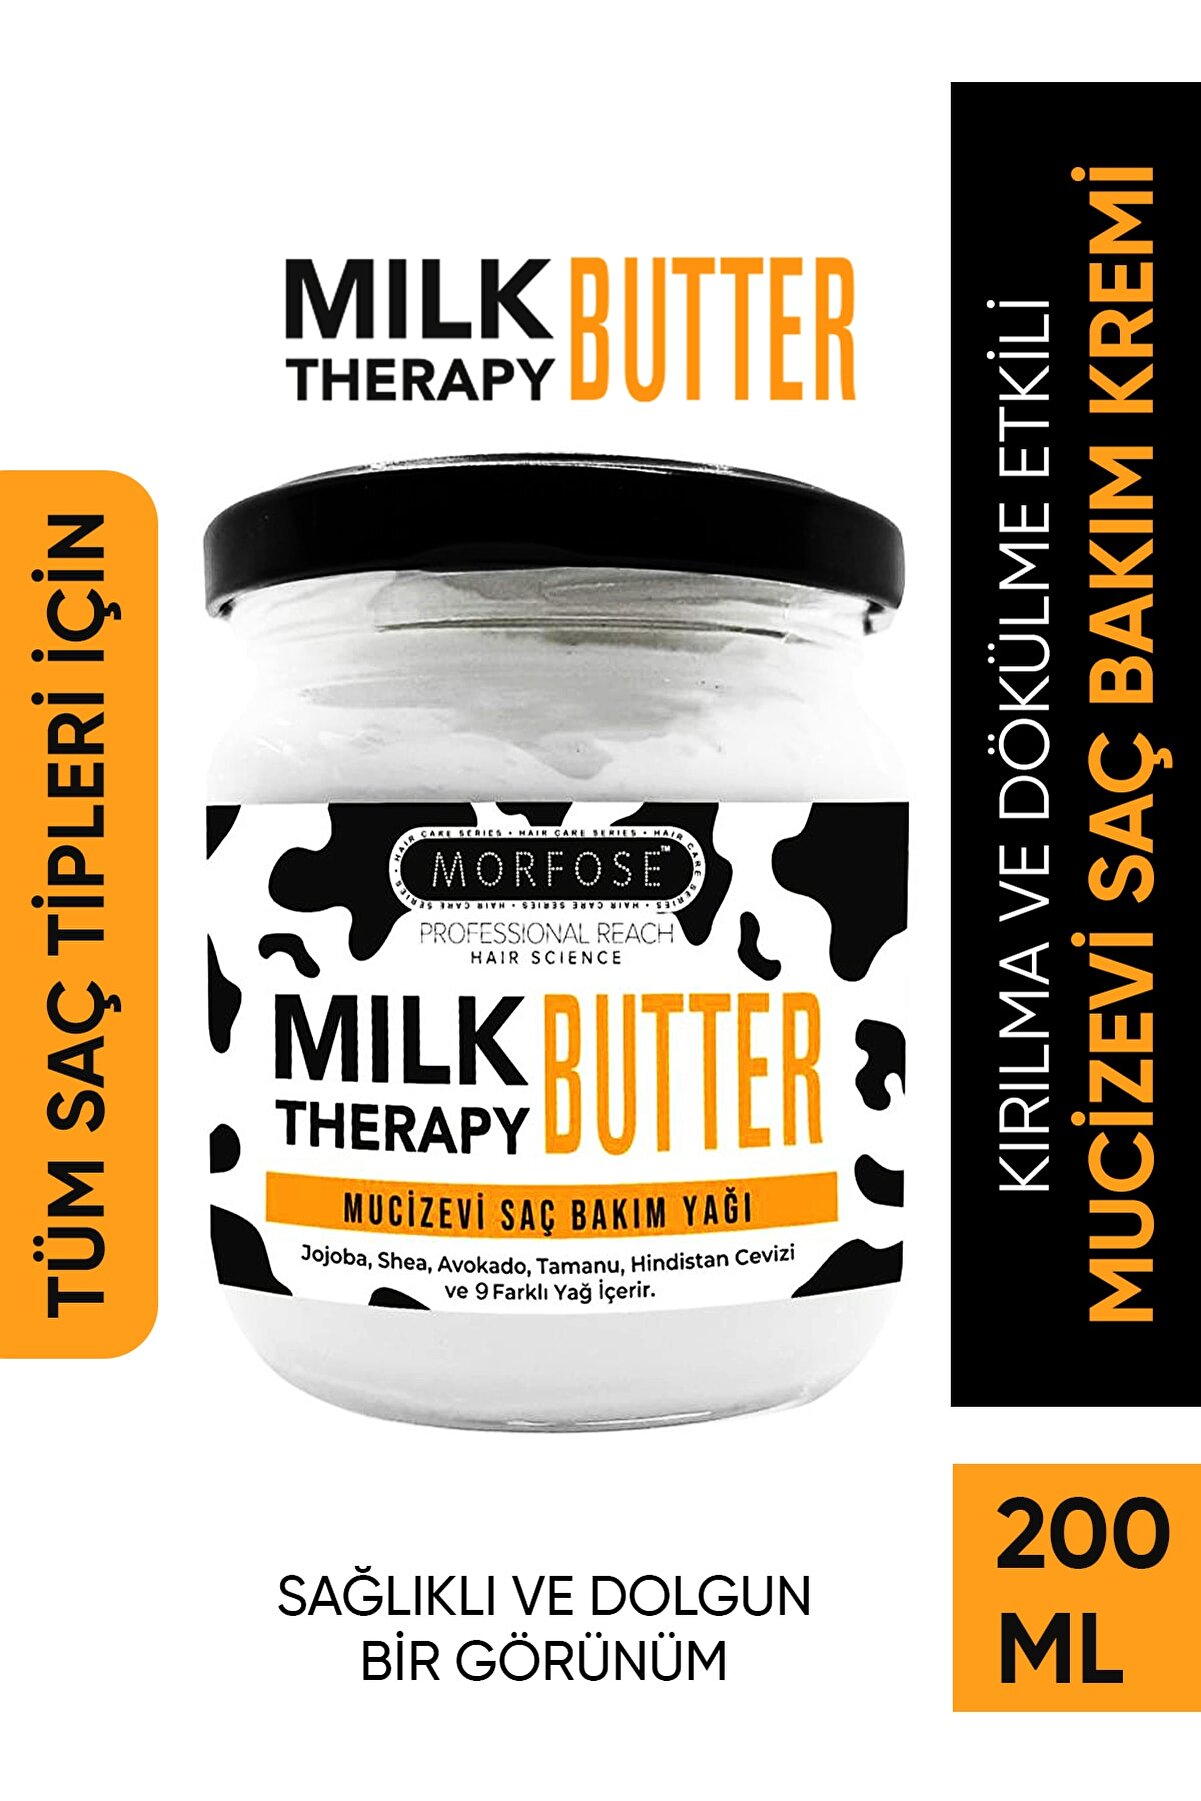 Morfose Milk Therapy Butter Yağ İçeren Mucizevi Saç Bakım Kremi